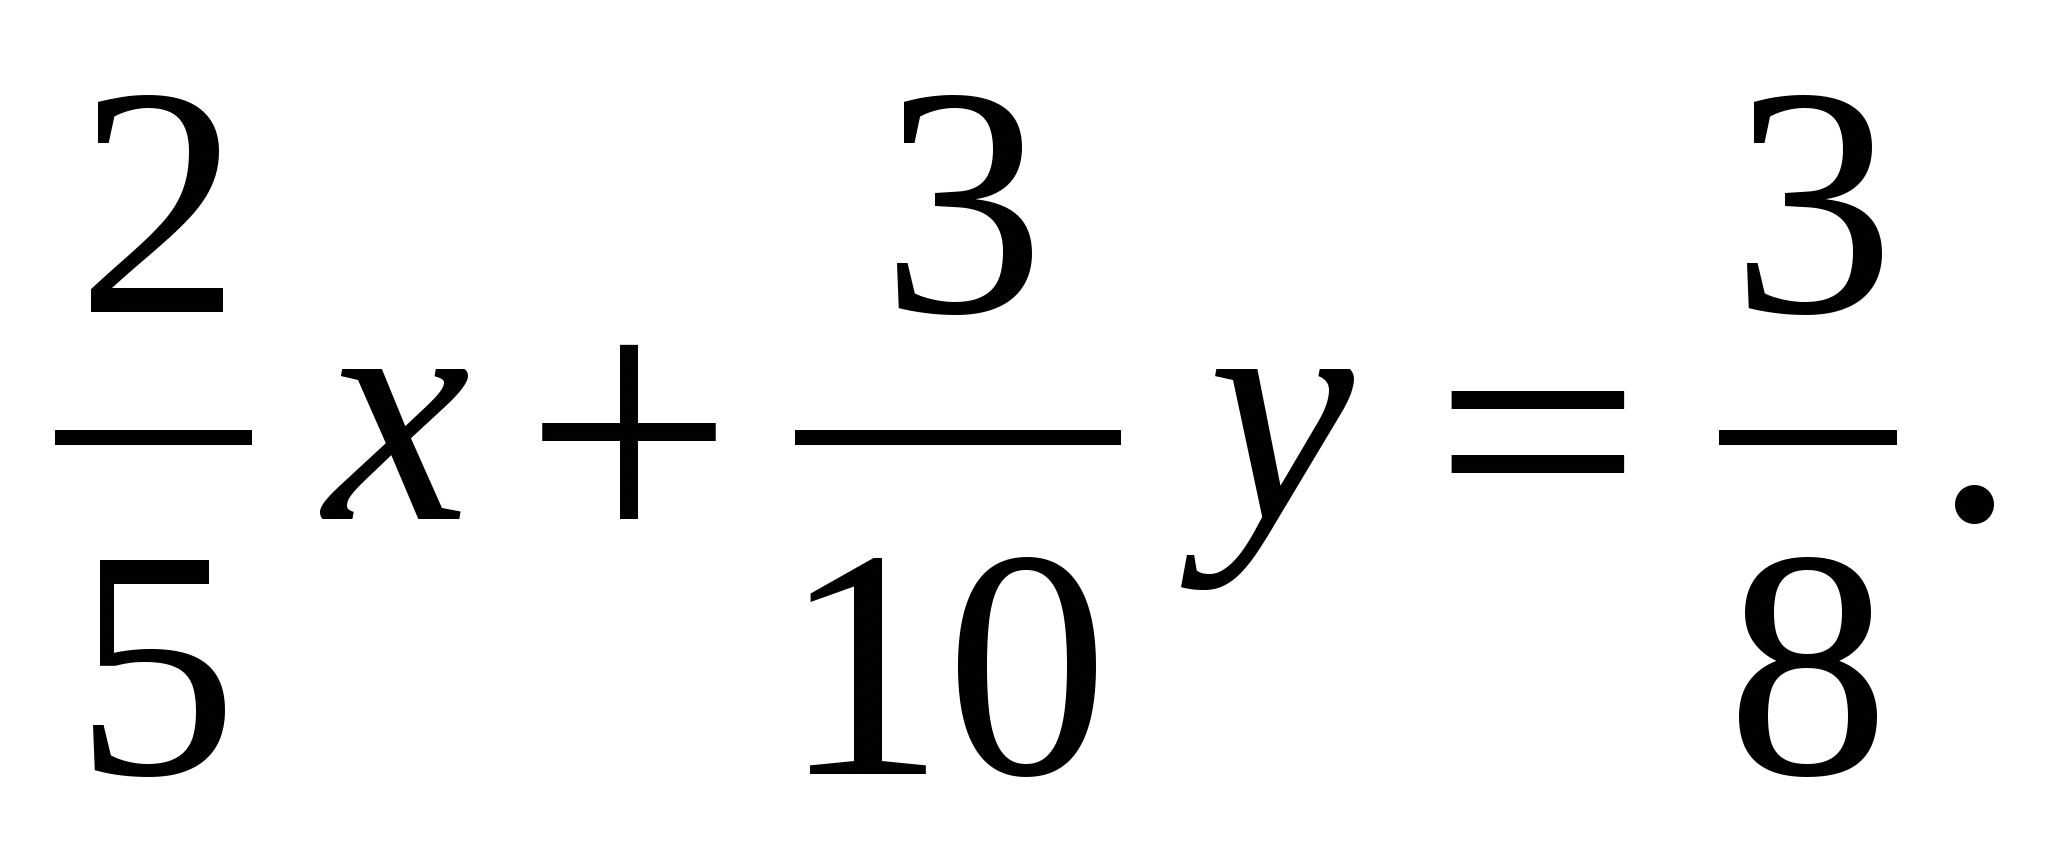 Урок математики 8 класс «Решение задач на смеси и сплавы»